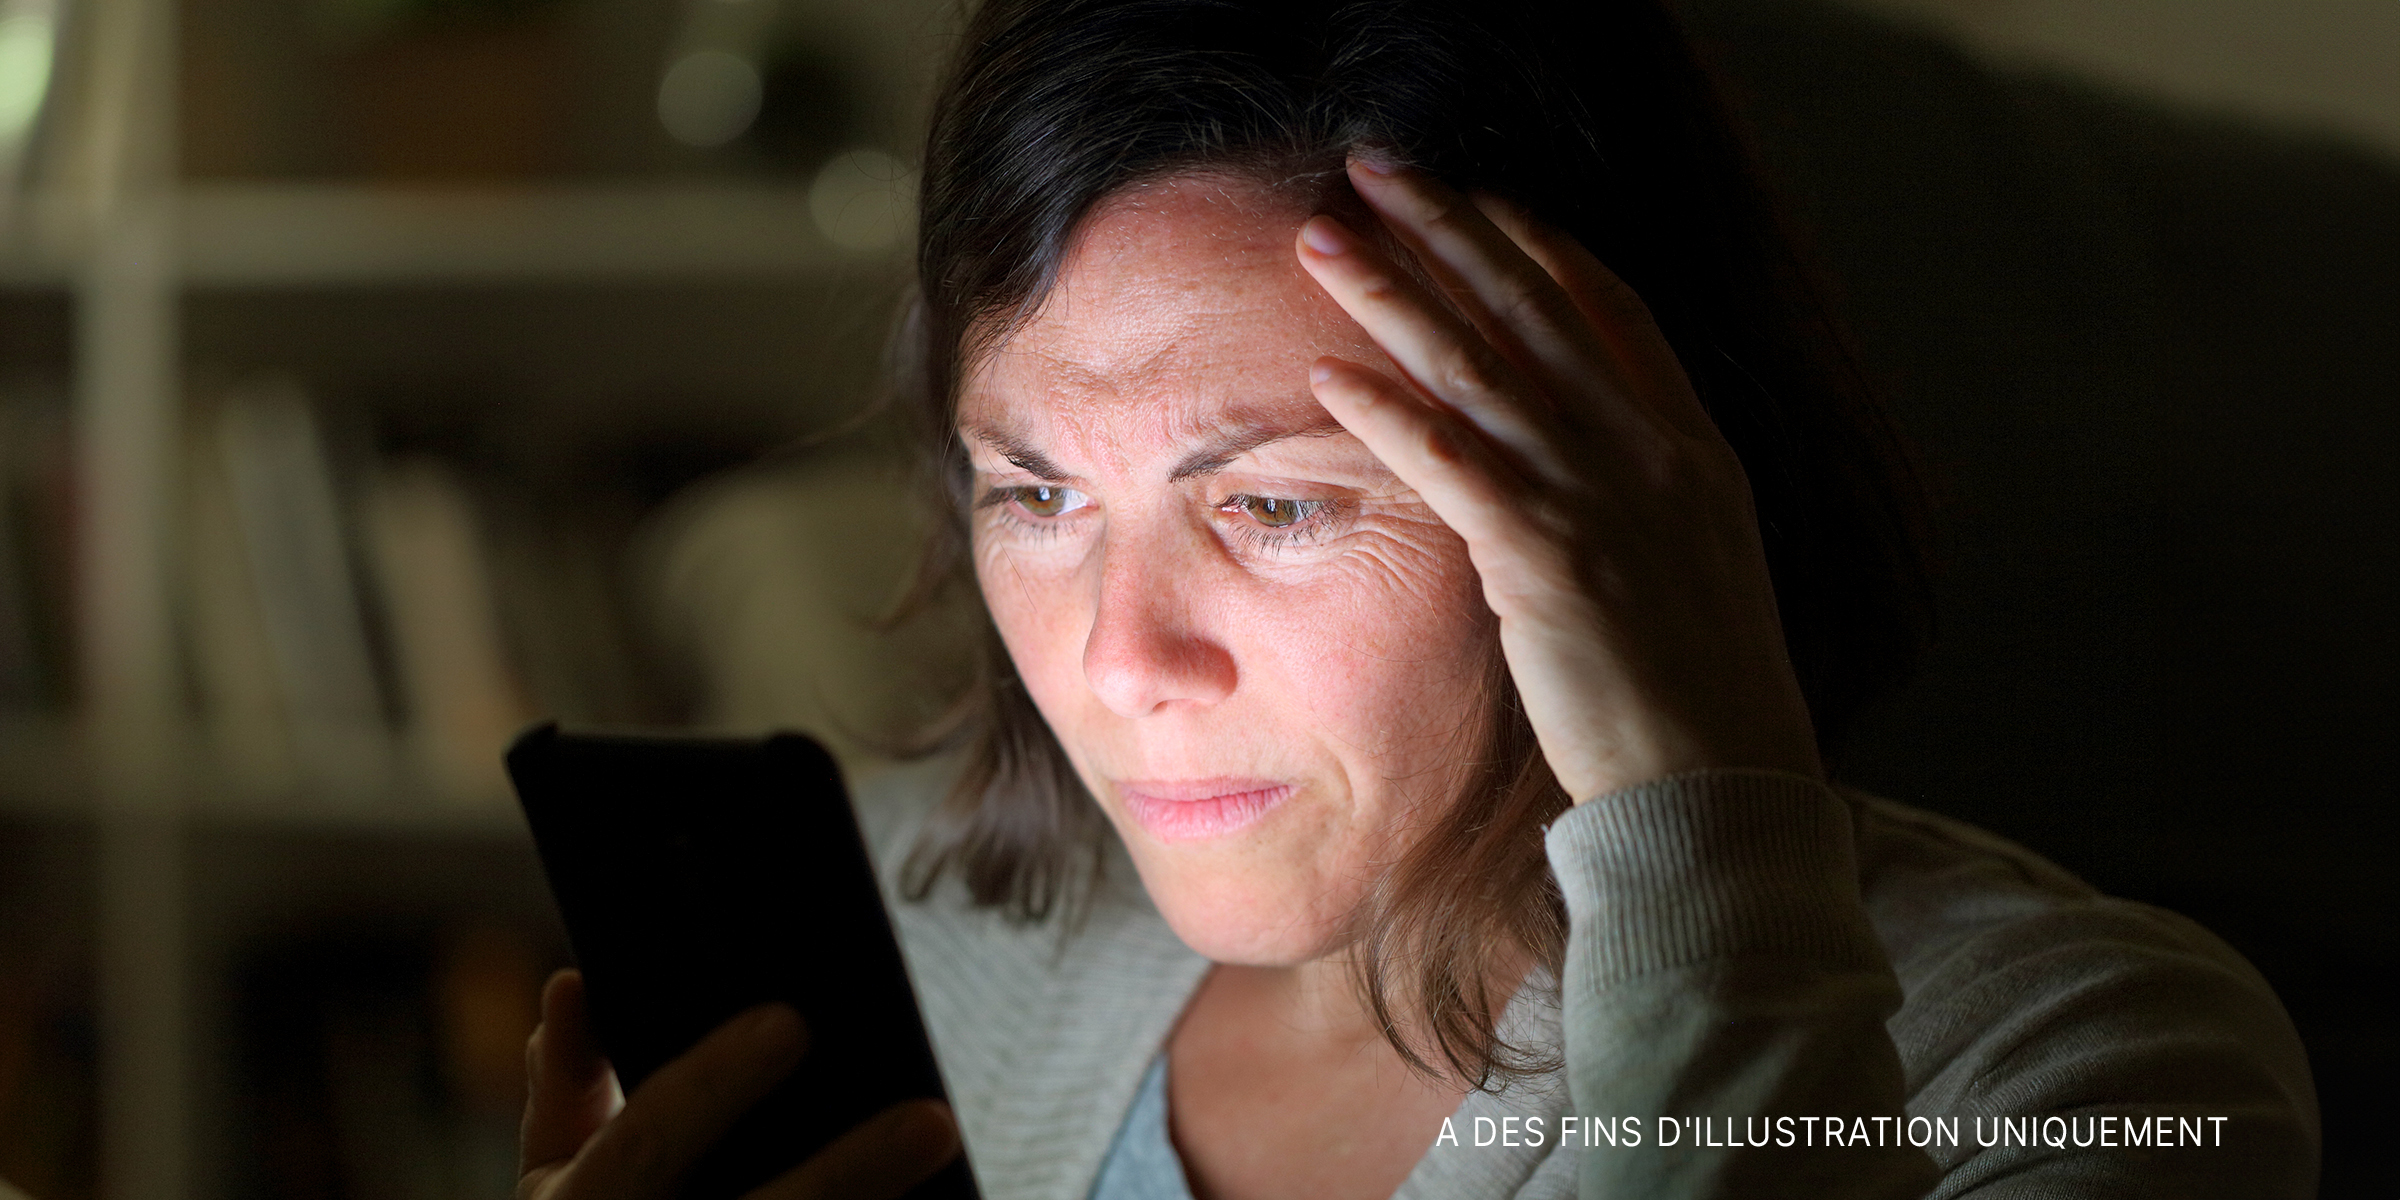 Une femme inquiète regarde son téléphone | Source : Shutterstock